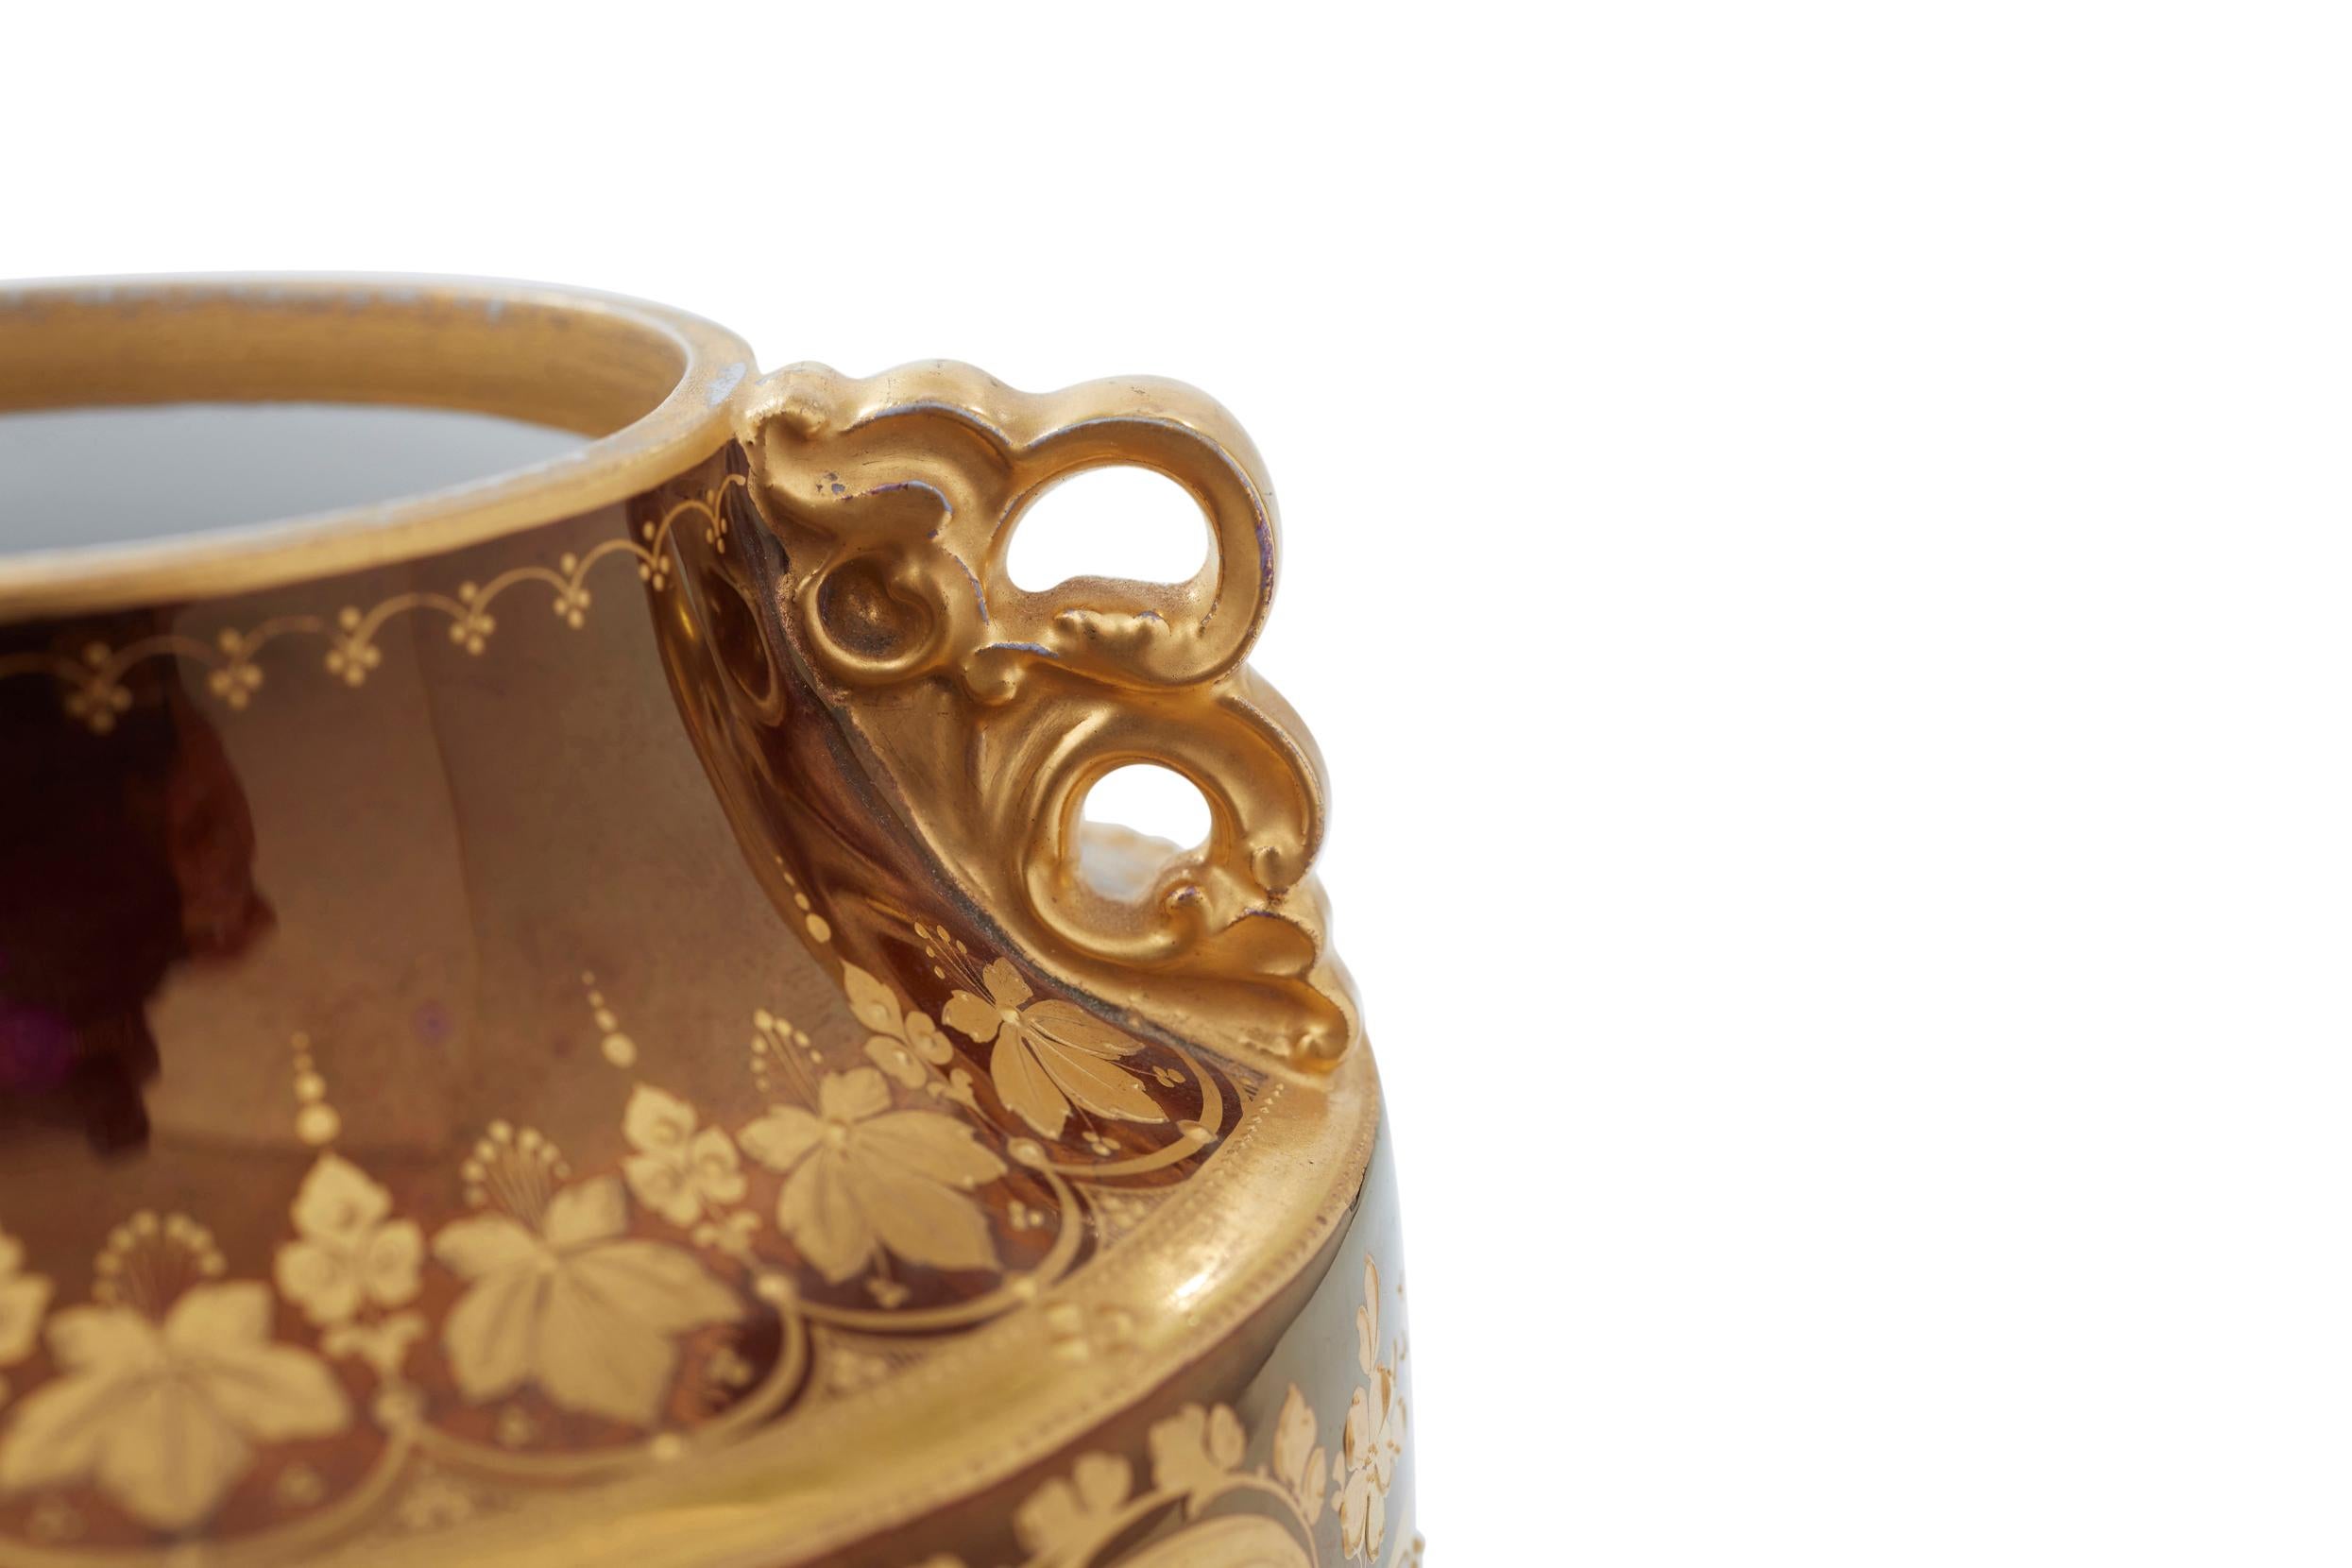 Royal Vienna Porcelain Decorative Vase / Piece For Sale 2